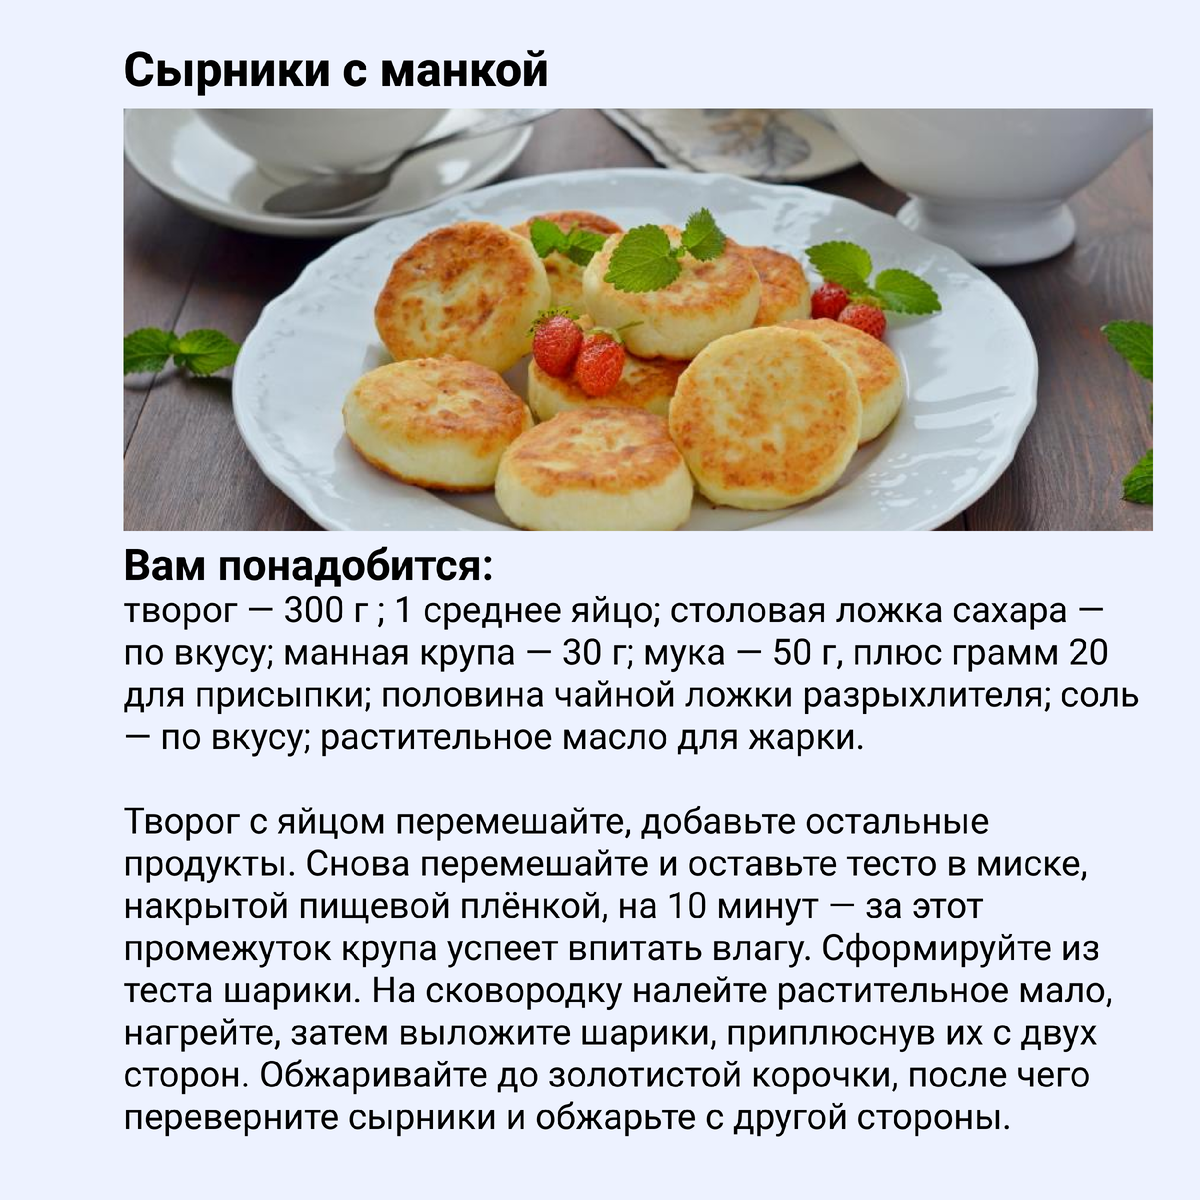 Сырники из творога рецепт классический пышные на сковороде фото рецепт пошаговый